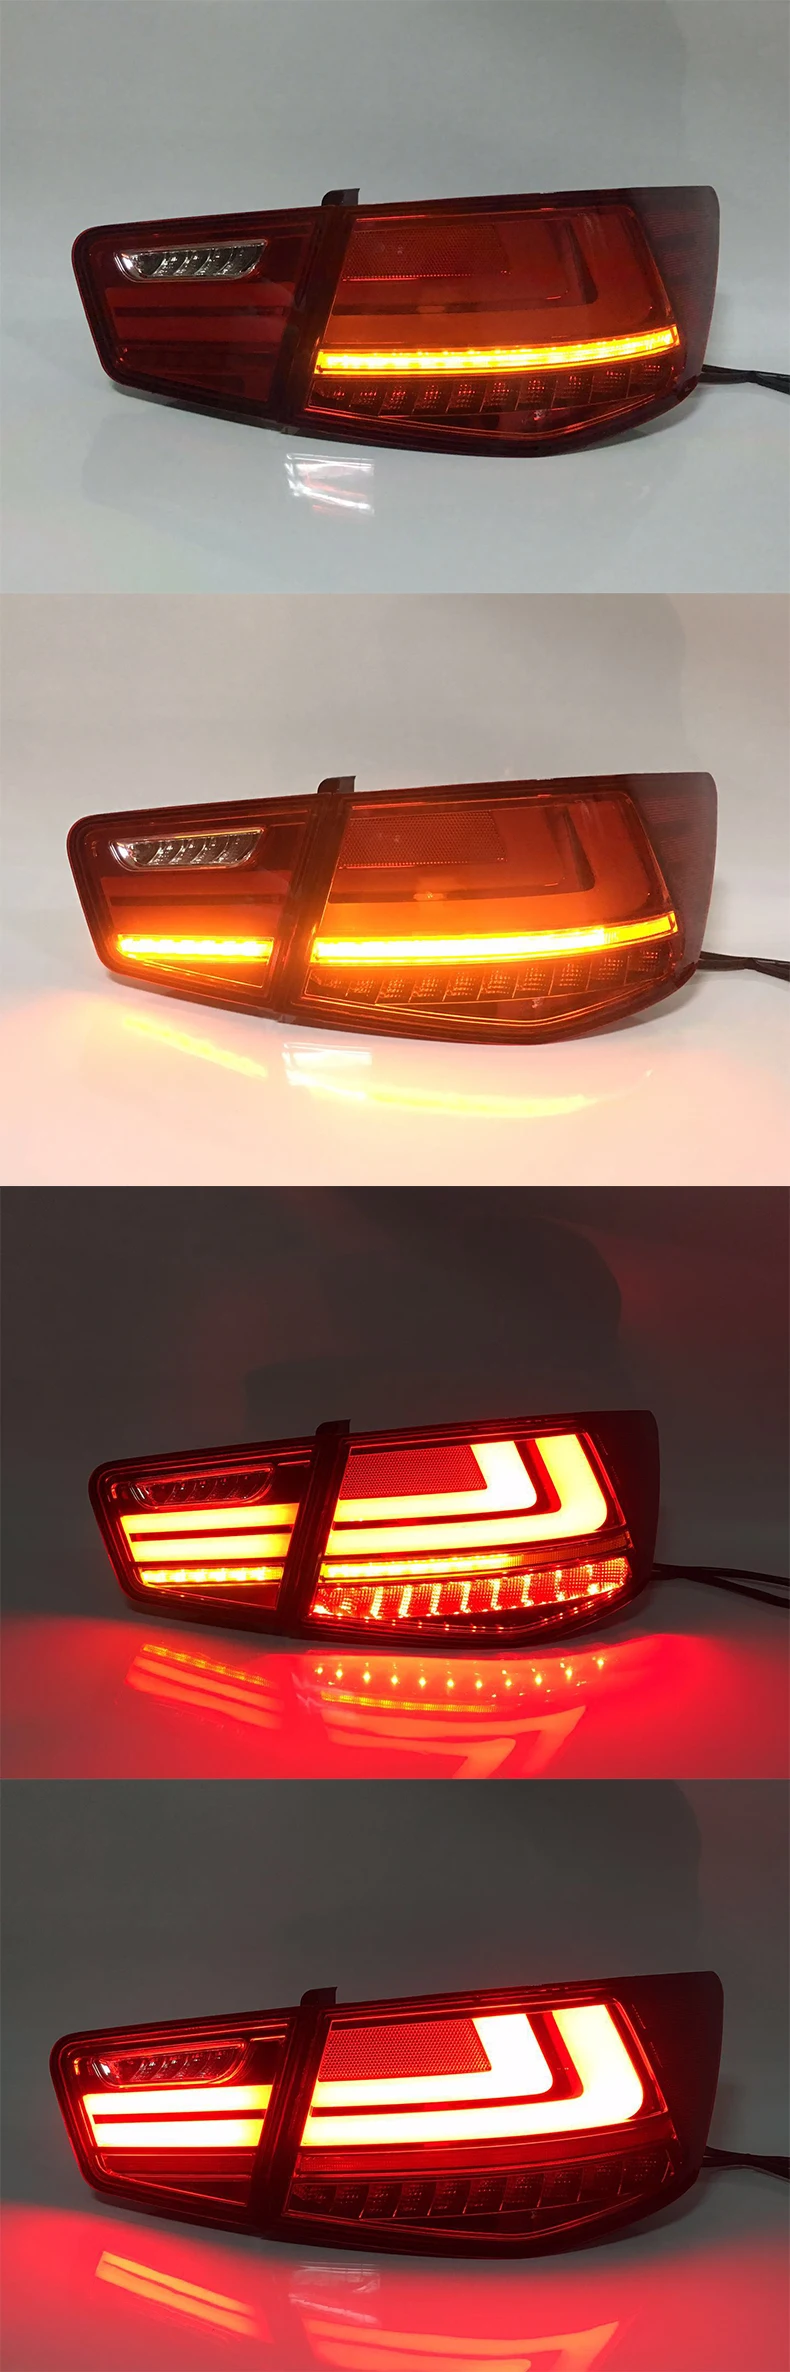 4 шт. автомобильный Стильный чехол для KIA Cerato Forte Sedan светодиодный задний фонарь 2009-2013 год задний светильник задний фонарь Тюнинг автомобиля задний фонарь